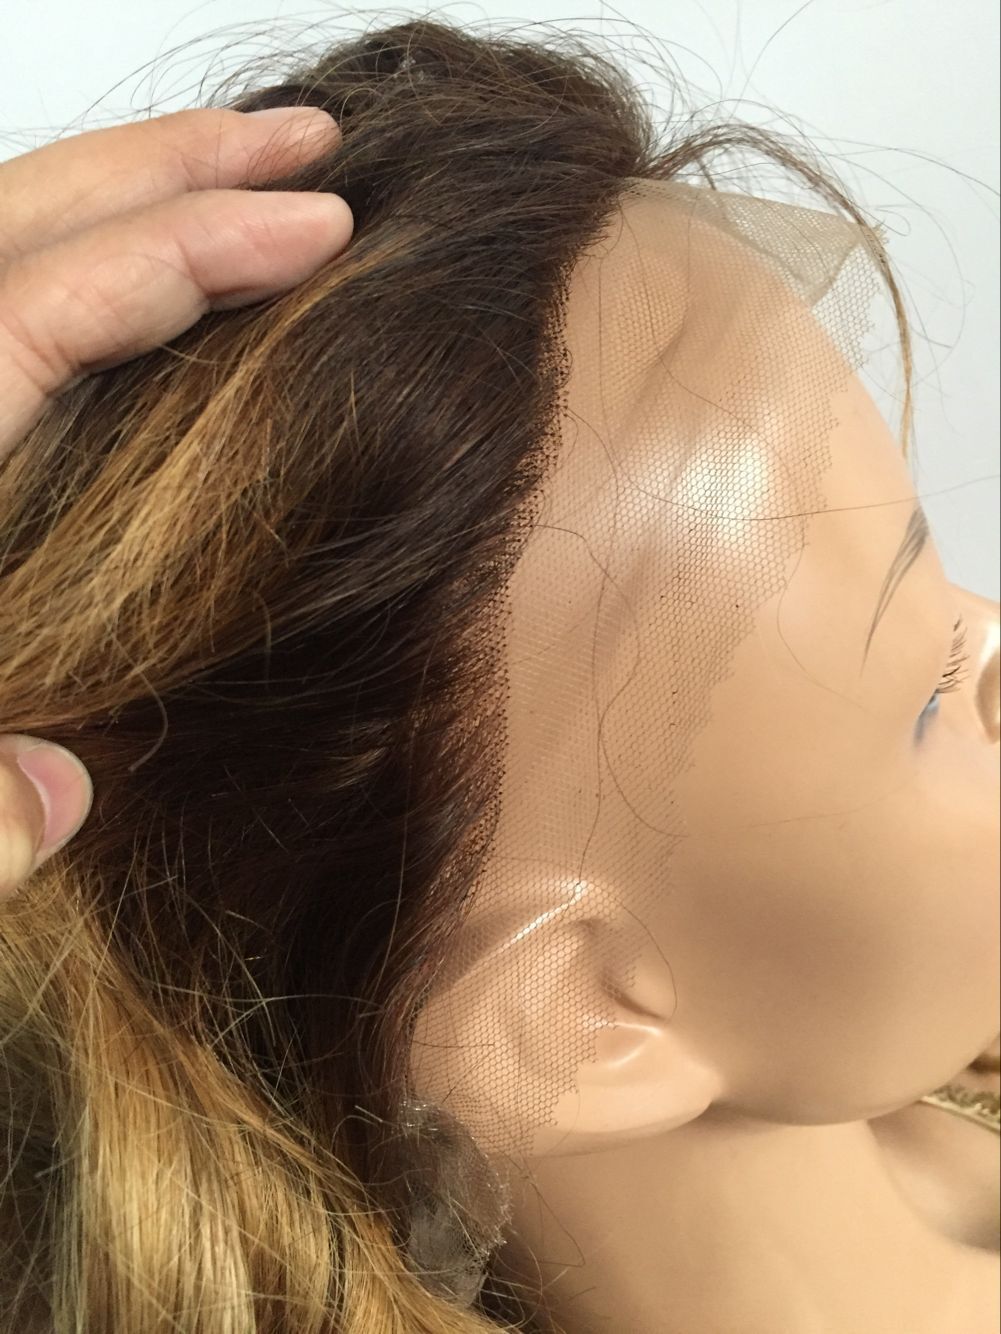 Brezilyalı Bakire Saç Tutkalsız Tam Dantel Peruk Ombre Bob Tarzı Iki Ton 1B / 30 İnsan Saçları Bobs Ağartılmış Knot Danteller Kadınlar için Ön Peruk